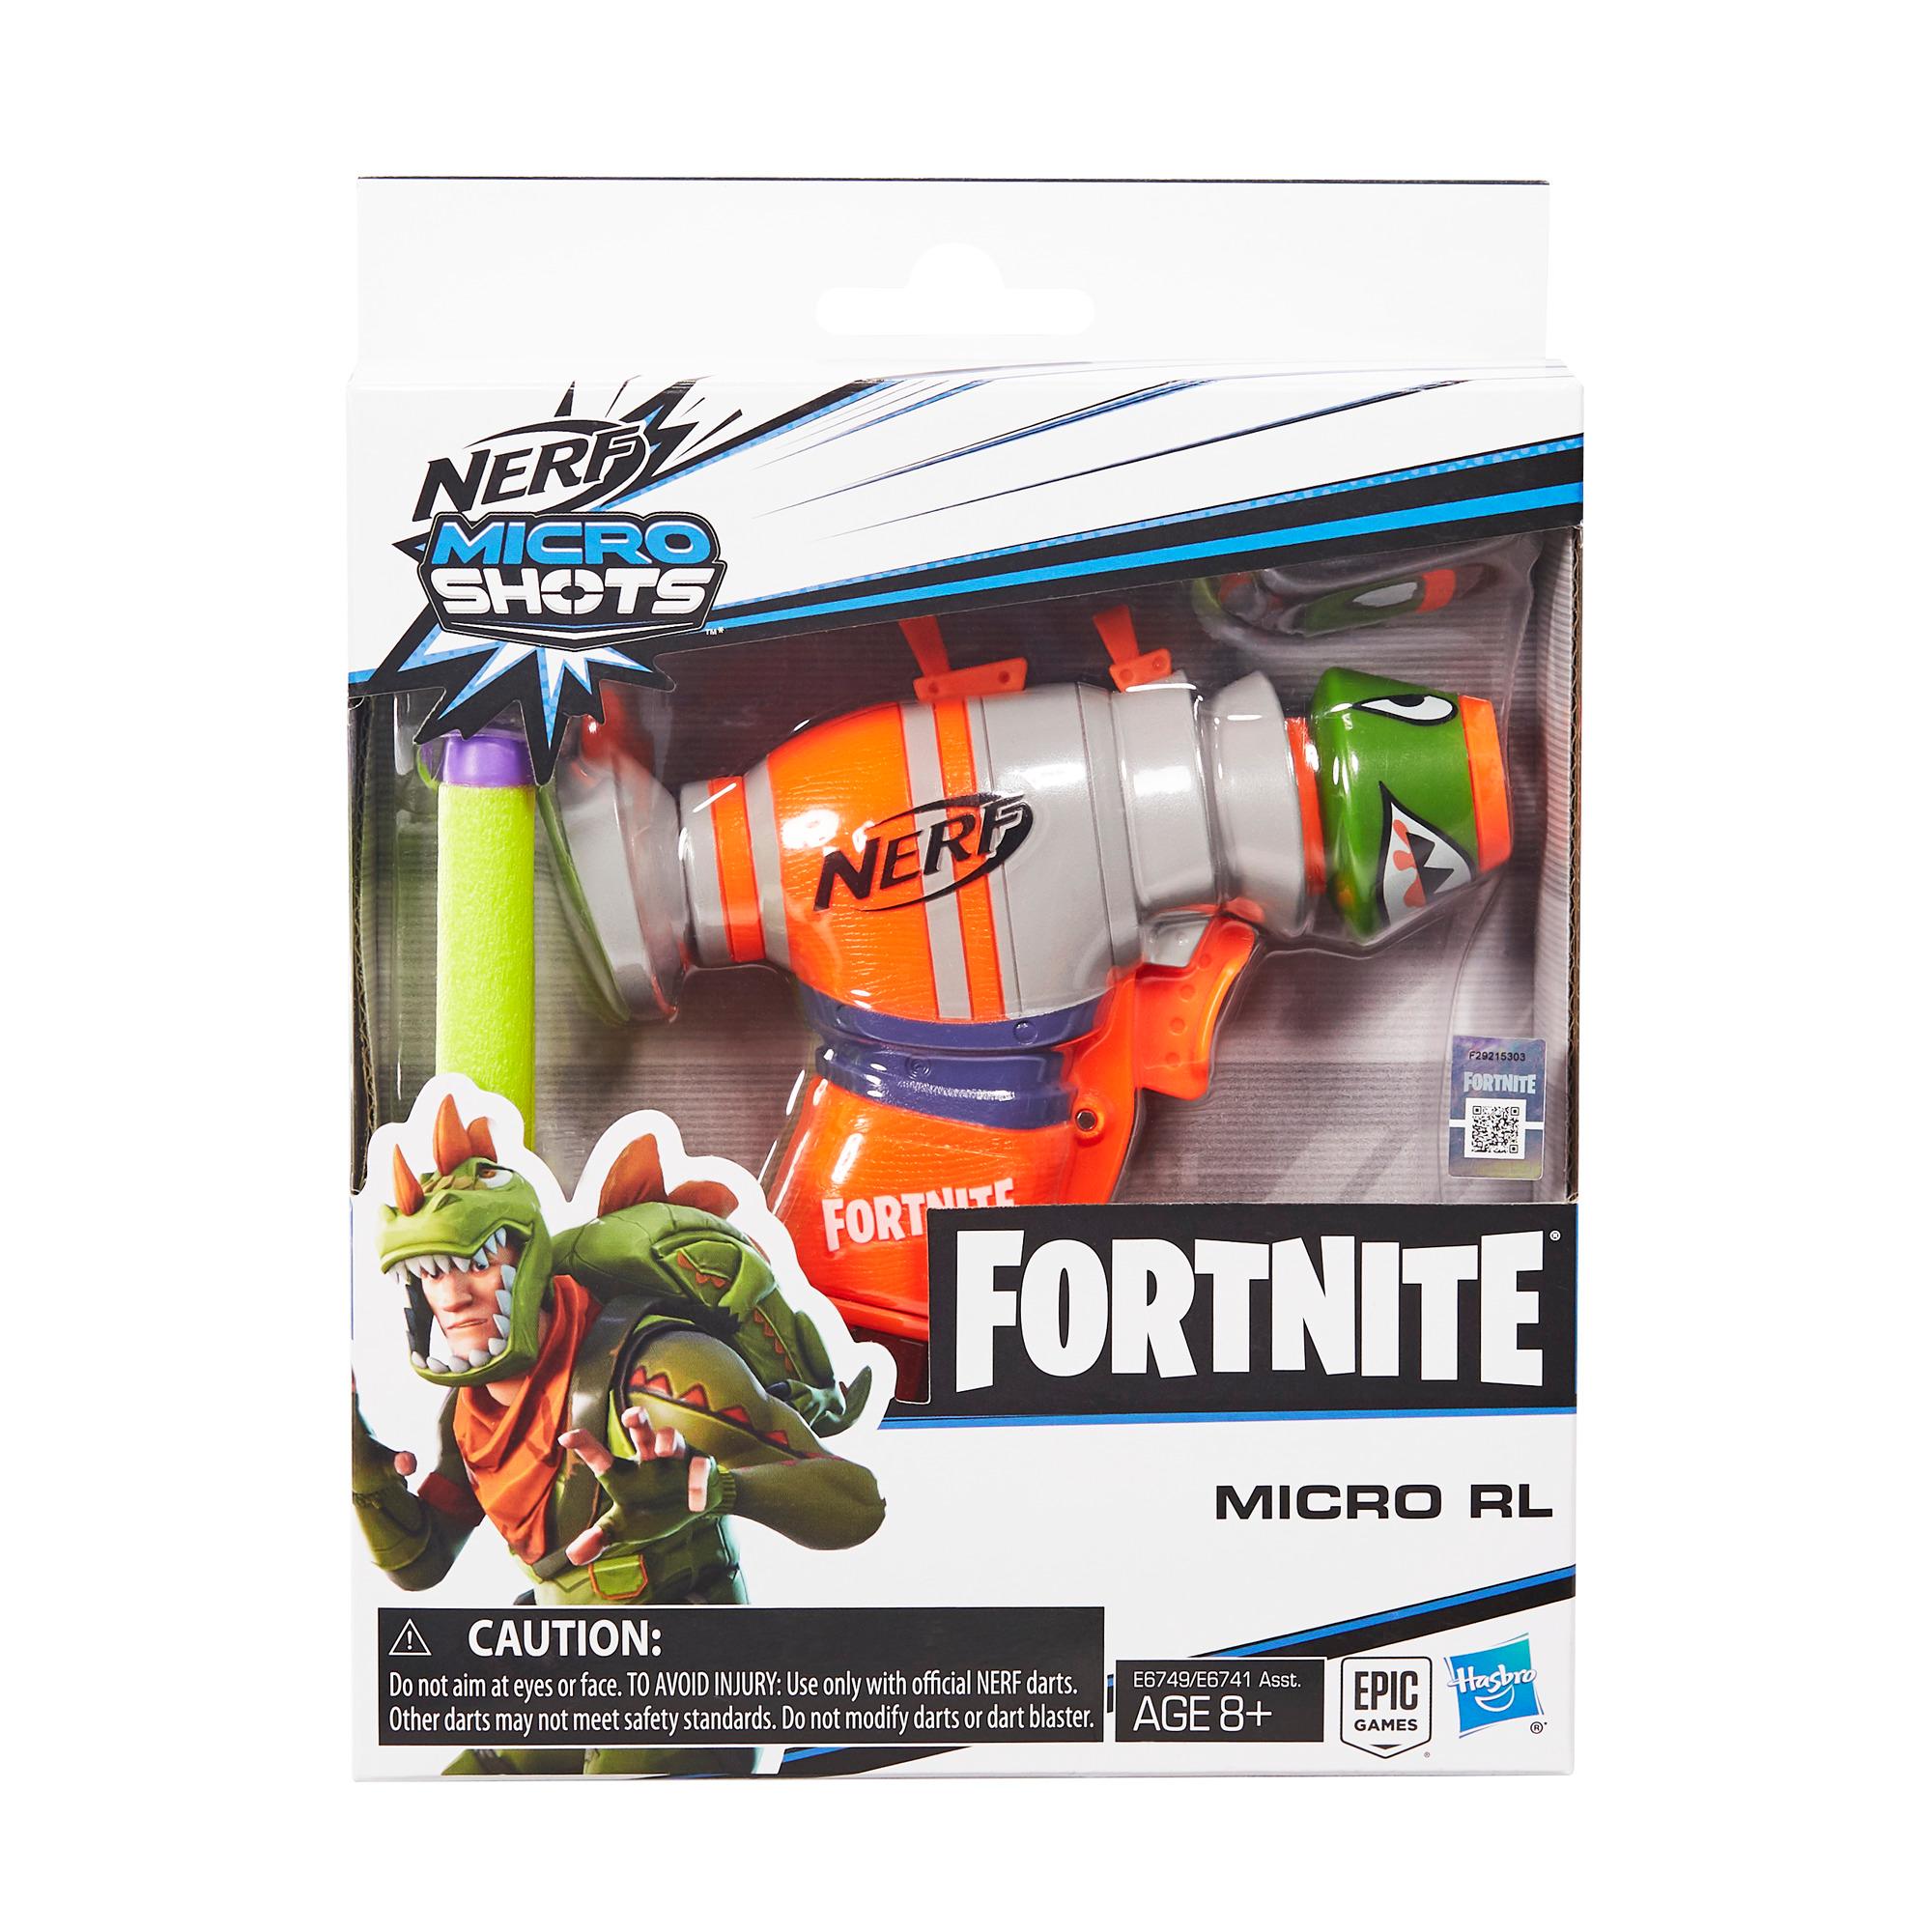 Blaster Fortnite RL Nerf MicroShots, inclut 2 fléchettes Nerf Elite officielles, pour enfants, ados et adultes